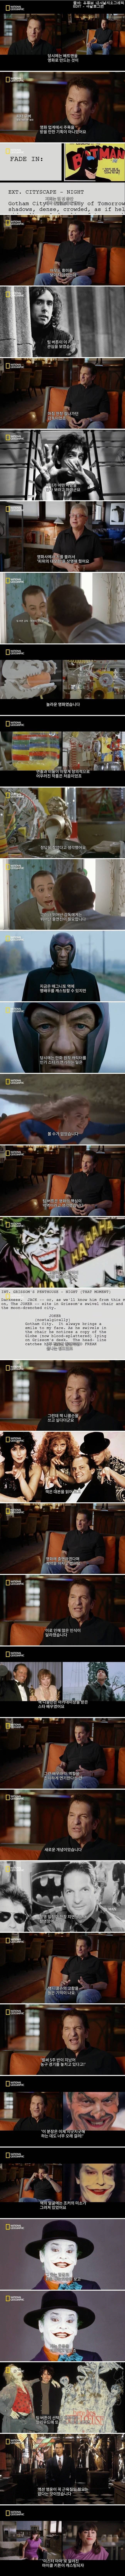 팀버튼의 배트맨이 영화계에 미친 영향력